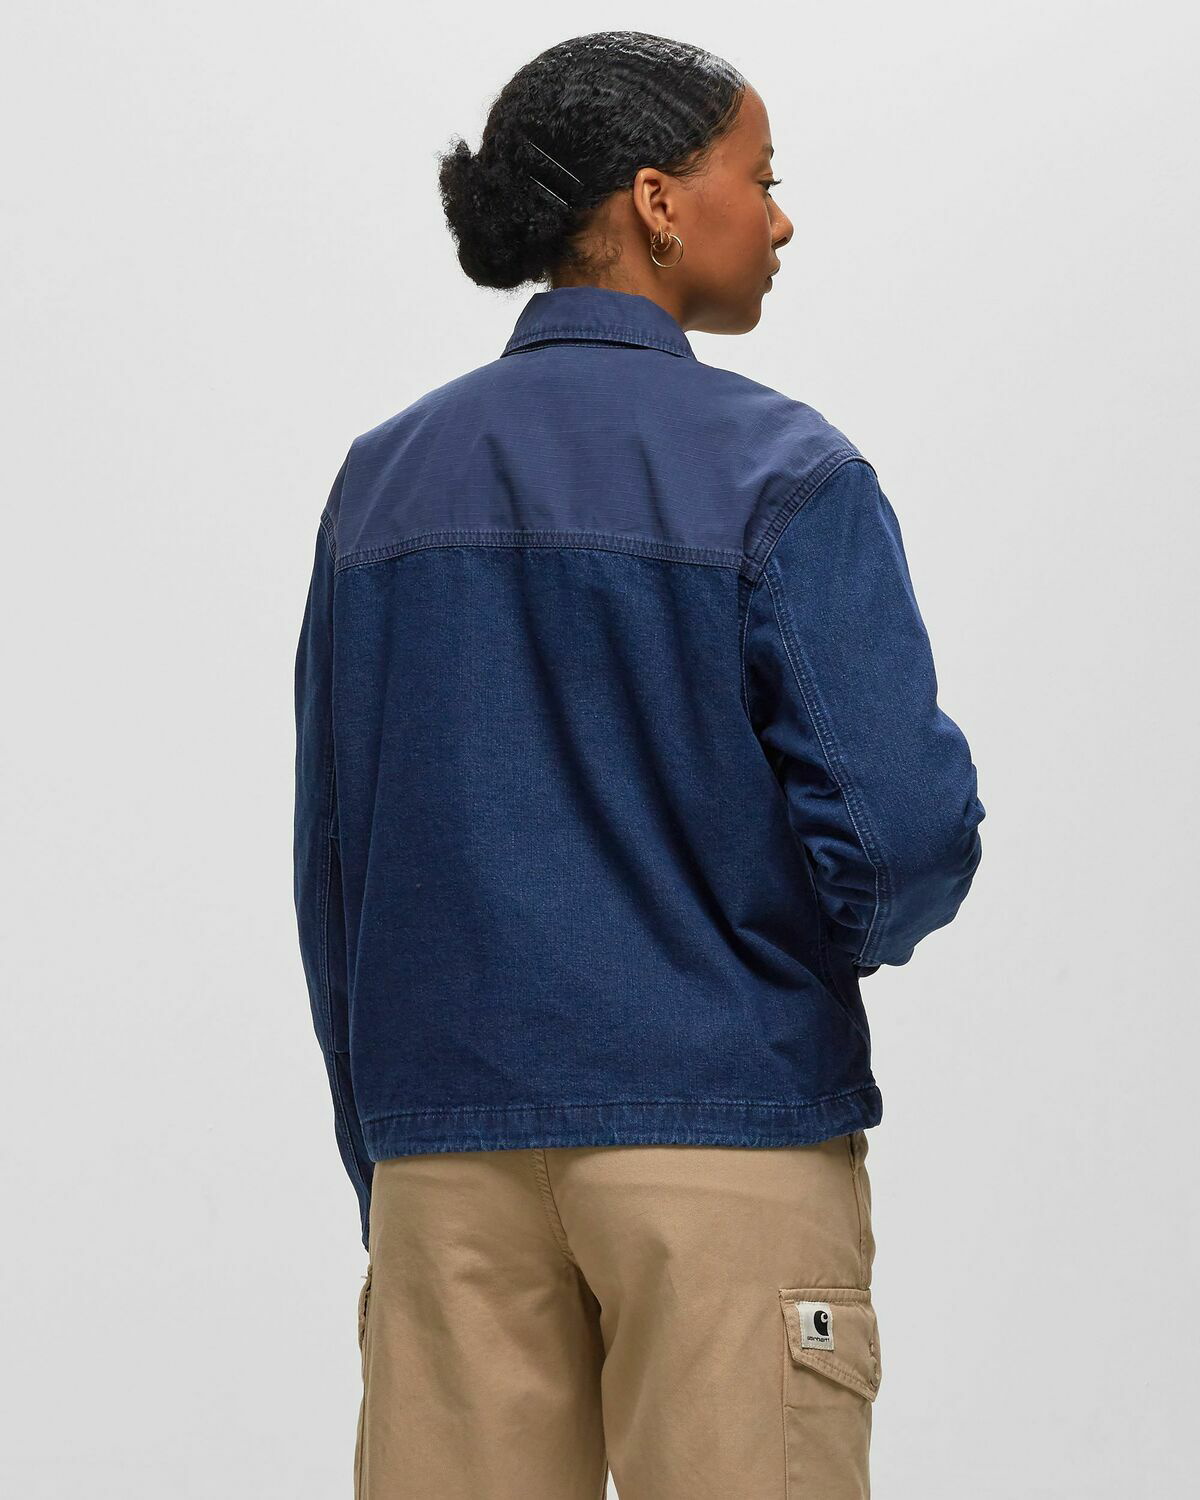 Carhartt WIP denim jacket men's navy blue color